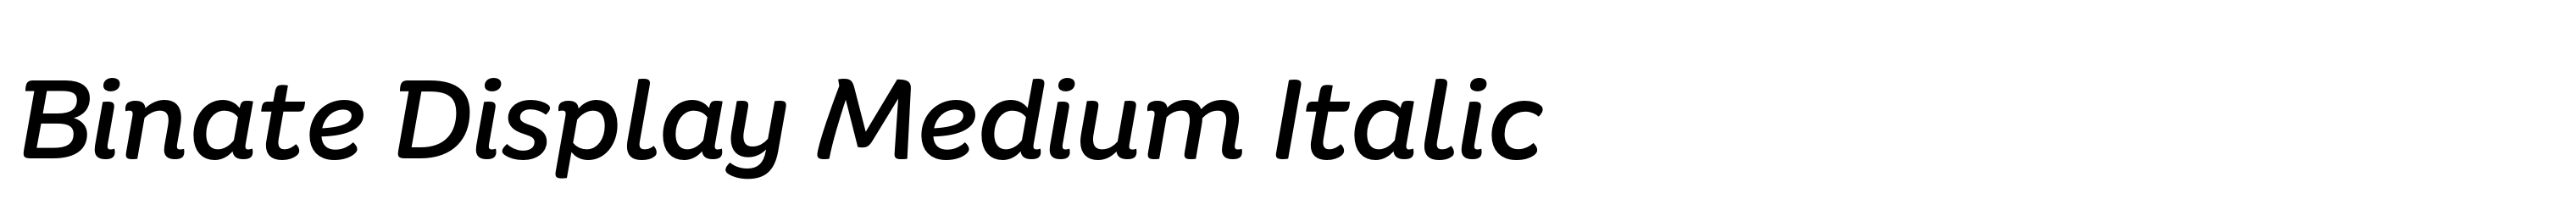 Binate Display Medium Italic